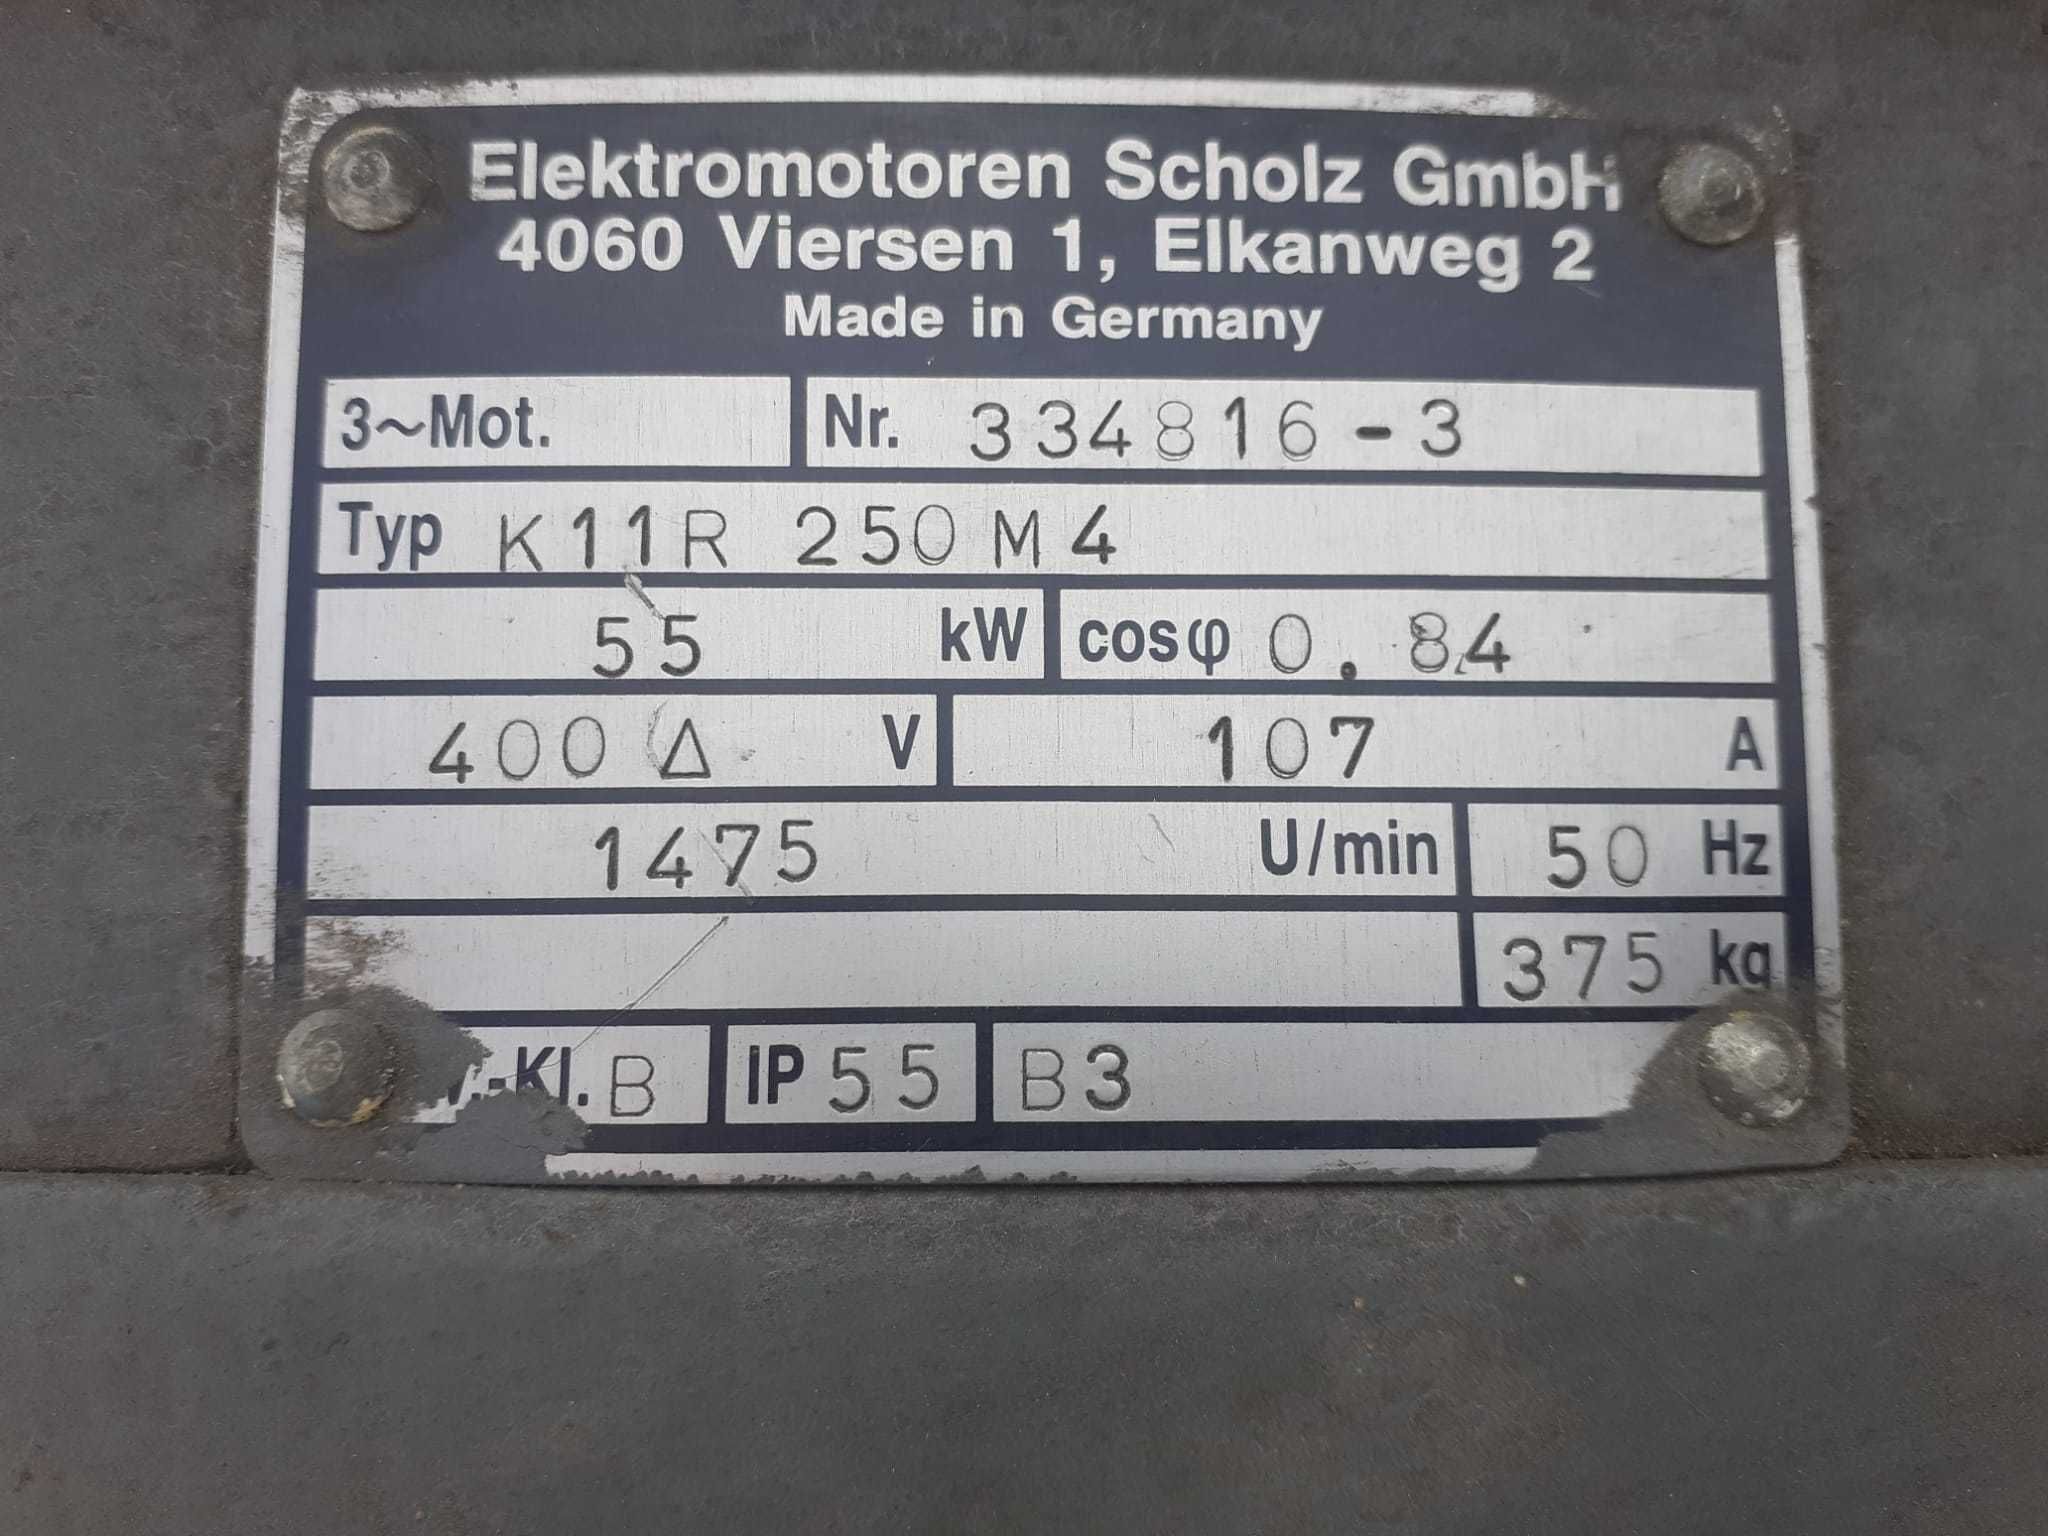 Motor electric 55kw turatie 1475